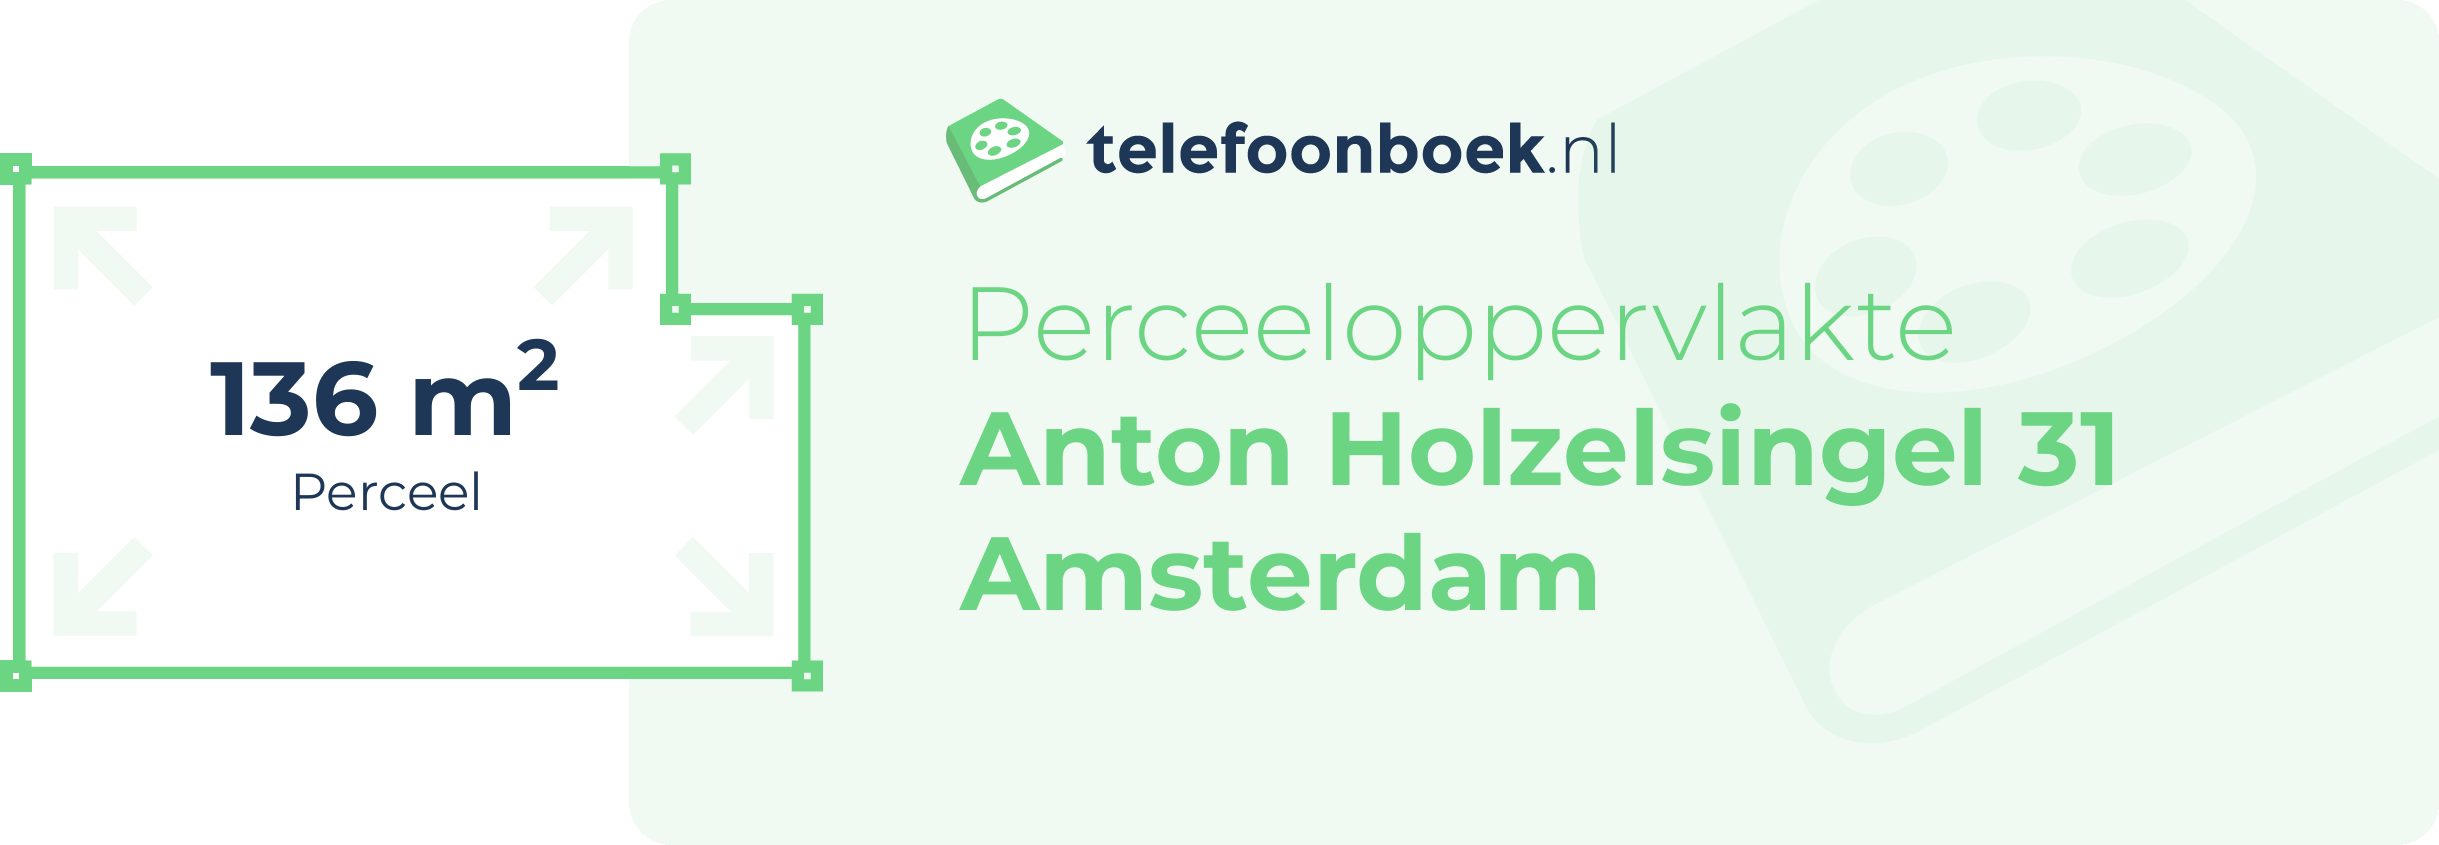 Perceeloppervlakte Anton Holzelsingel 31 Amsterdam